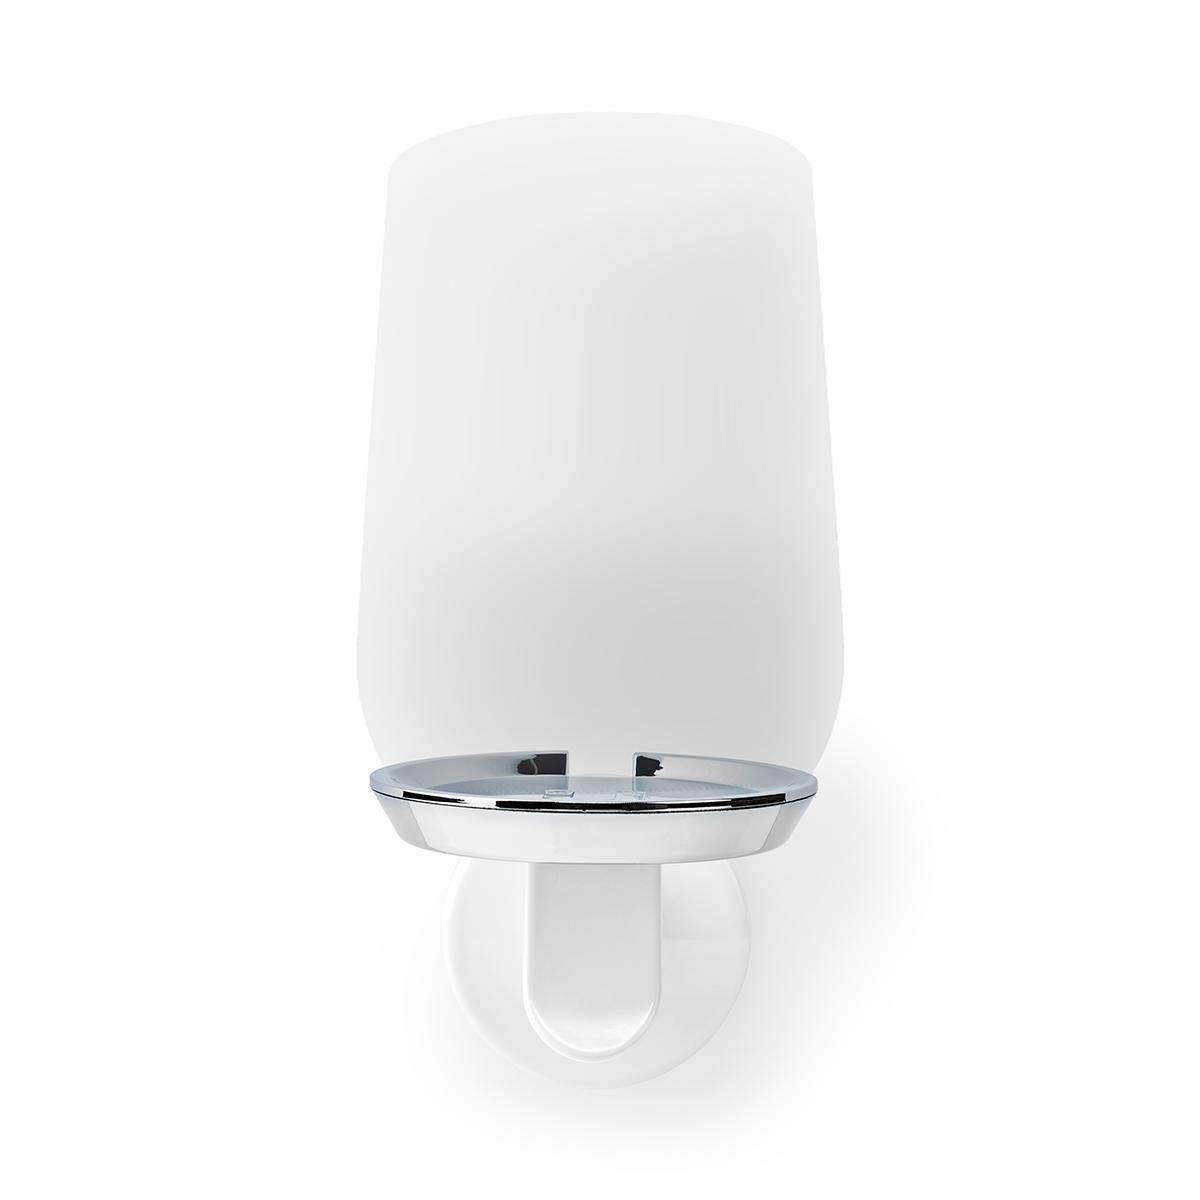 White White NEDIS Speaker Mount Speaker Wall Mount for Google Home Mini Plastic 